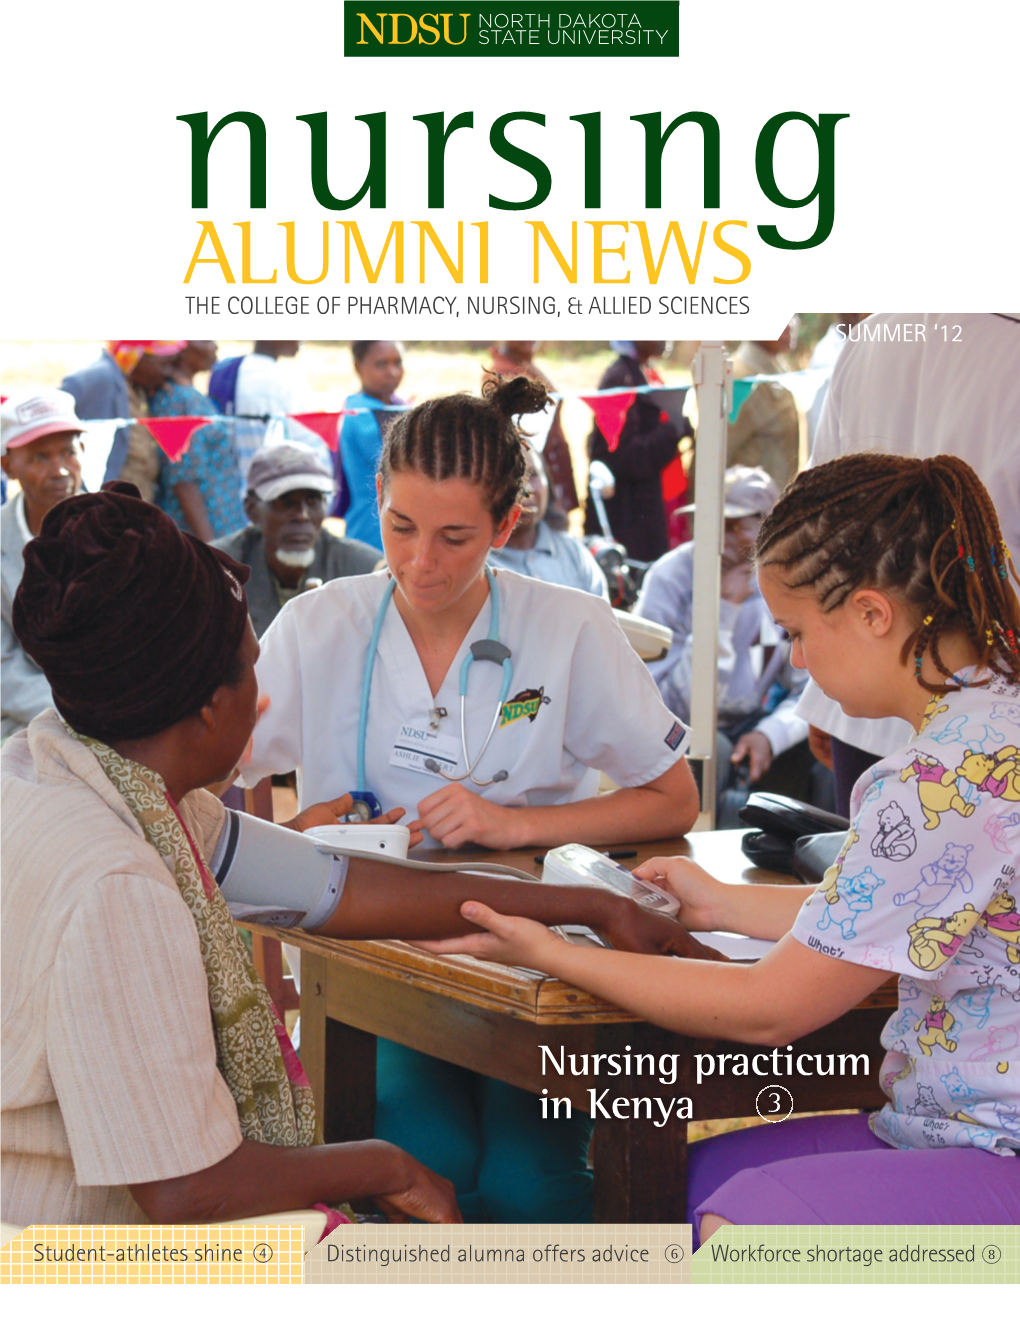 Nursing Practicum in Kenya 3